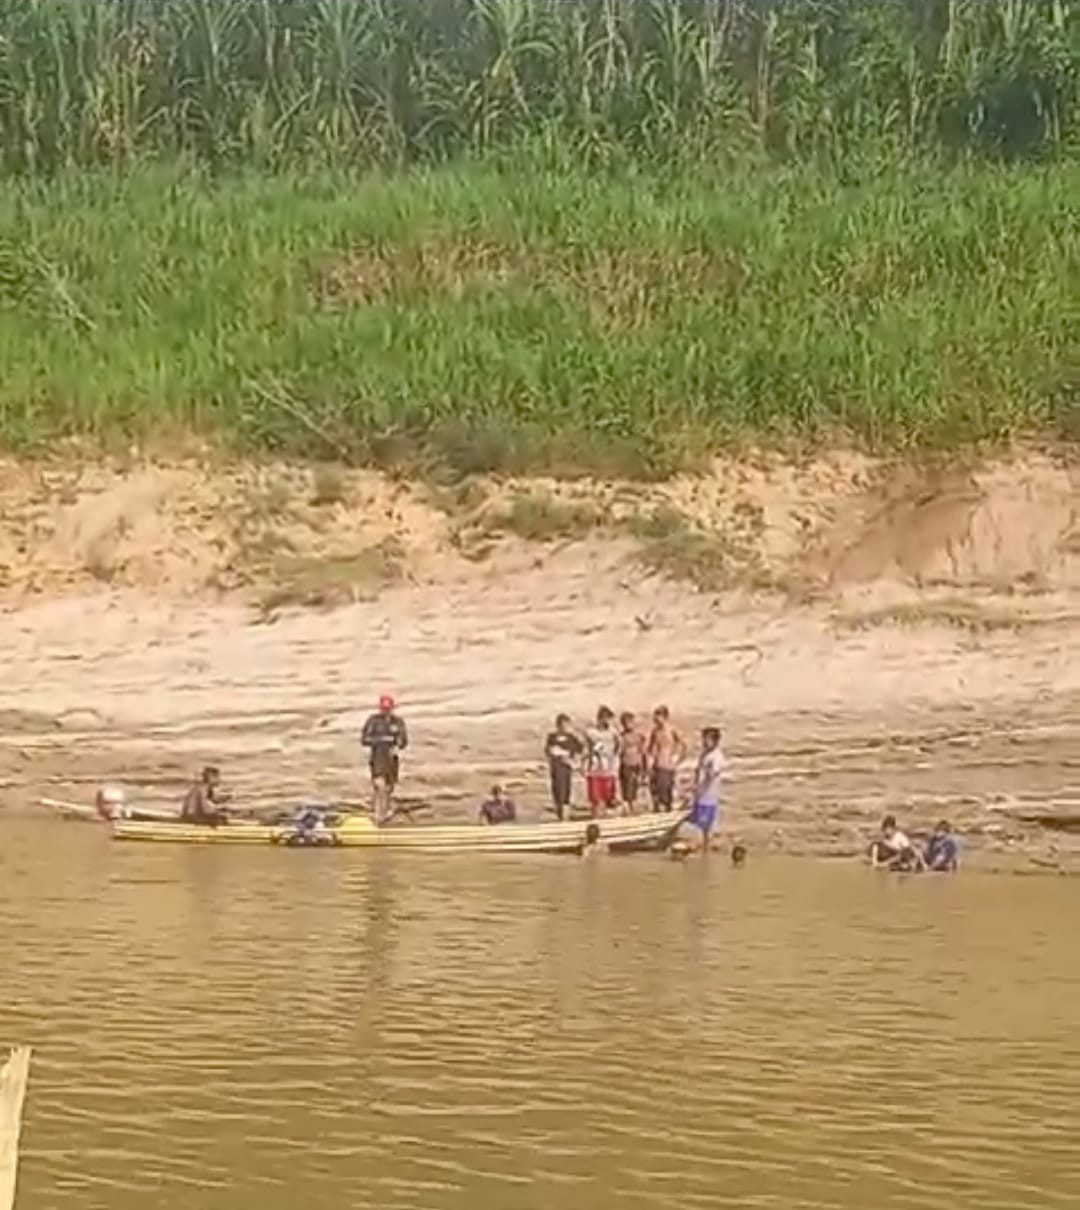 Adolescente de 13 anos morre afogado no interior do AC ao atravessar rio com amigos